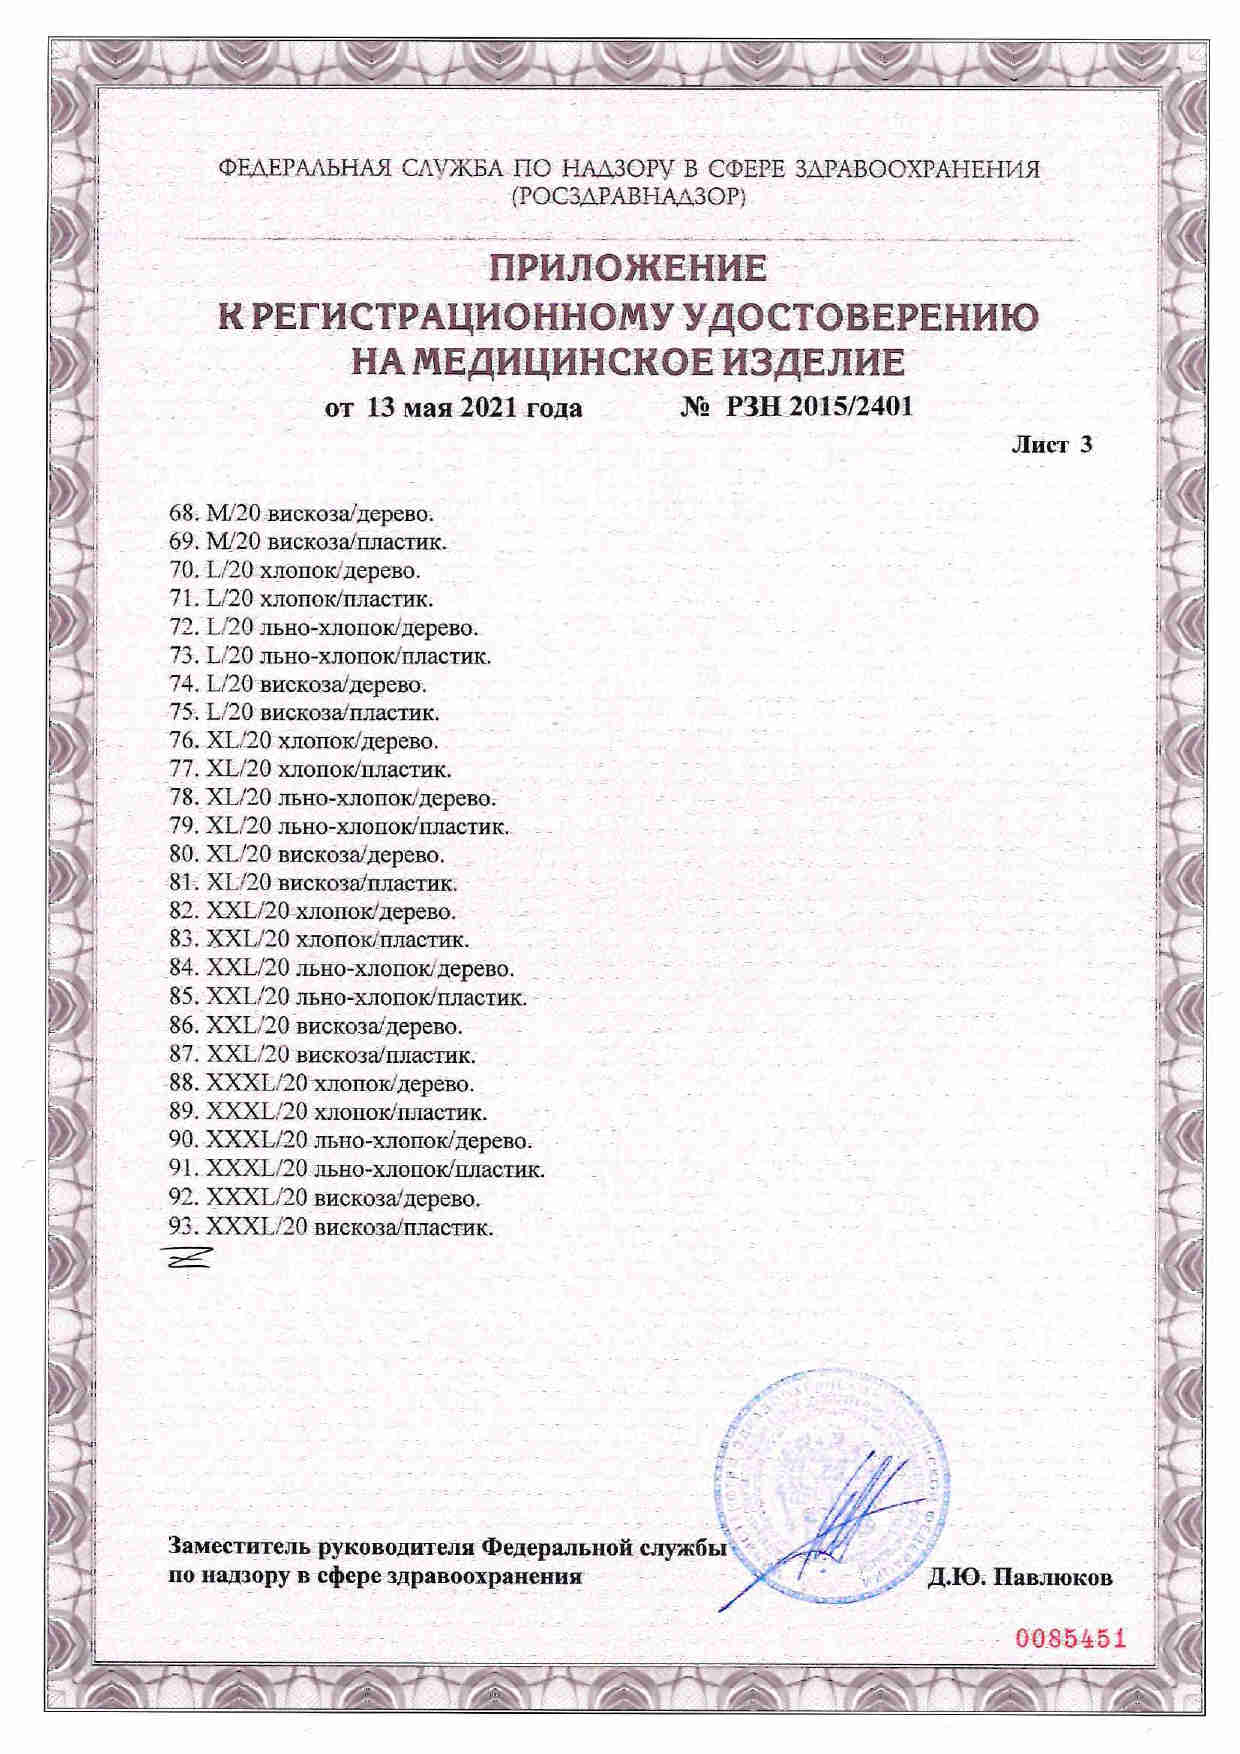 Кушетка физиотерапевтическая КМФ-01 регистрационное удостоверение